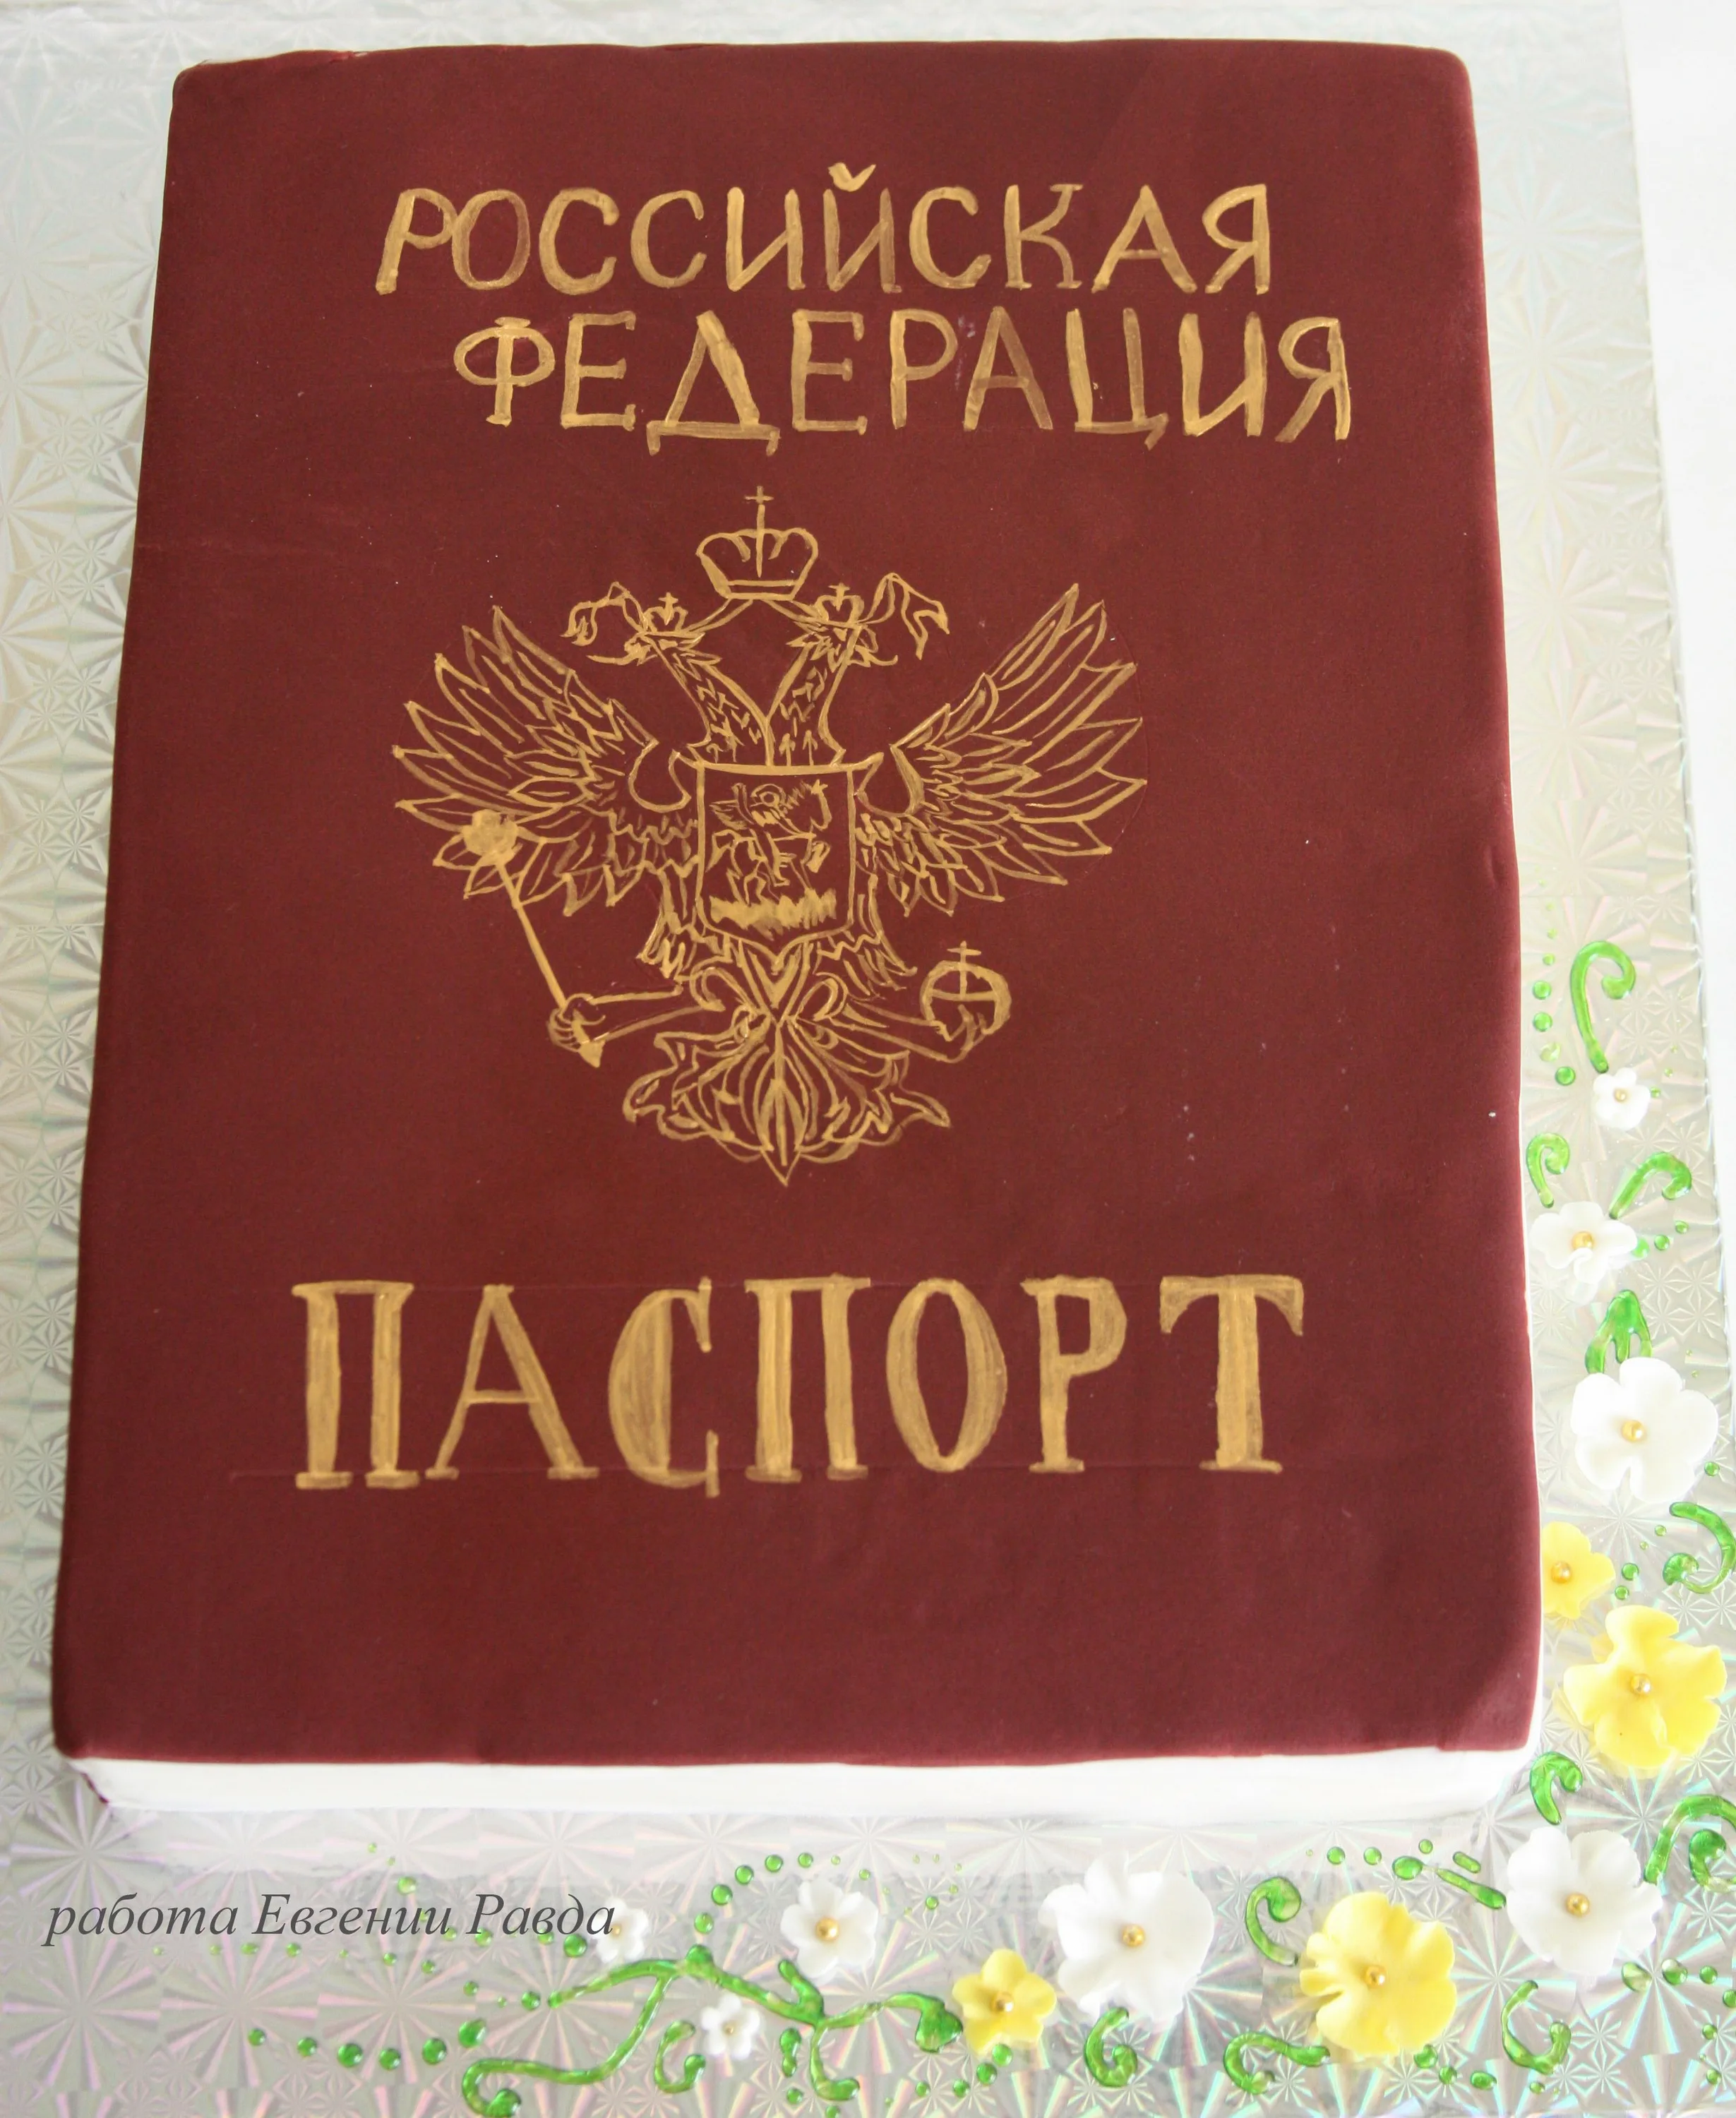 Фото Поздравление с получением паспорта в 14 лет мальчику #56